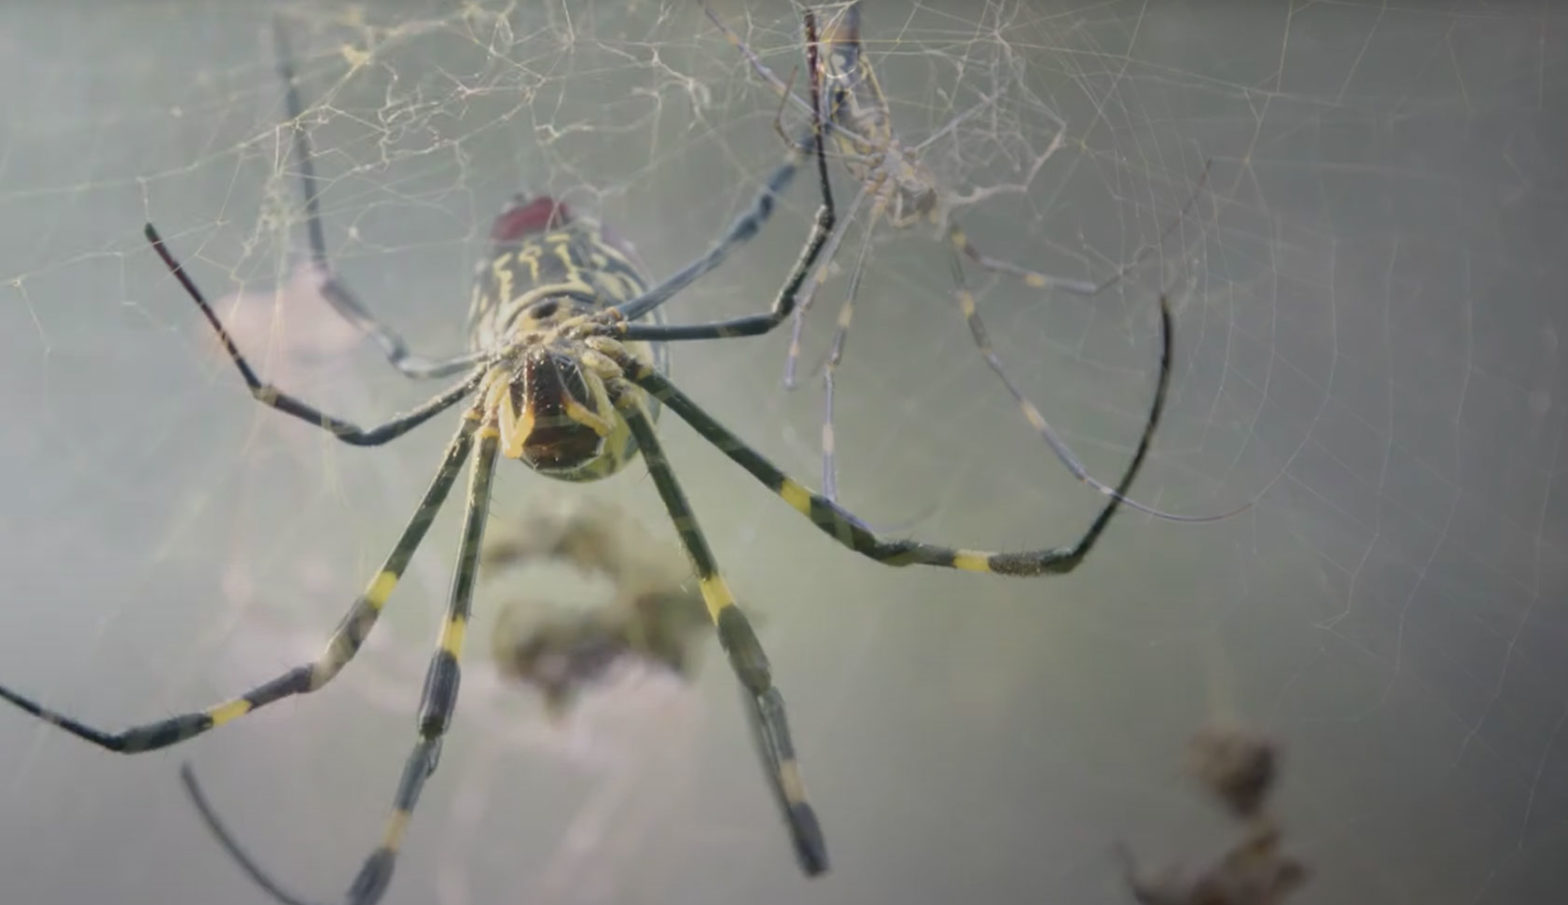 joro spider in her web